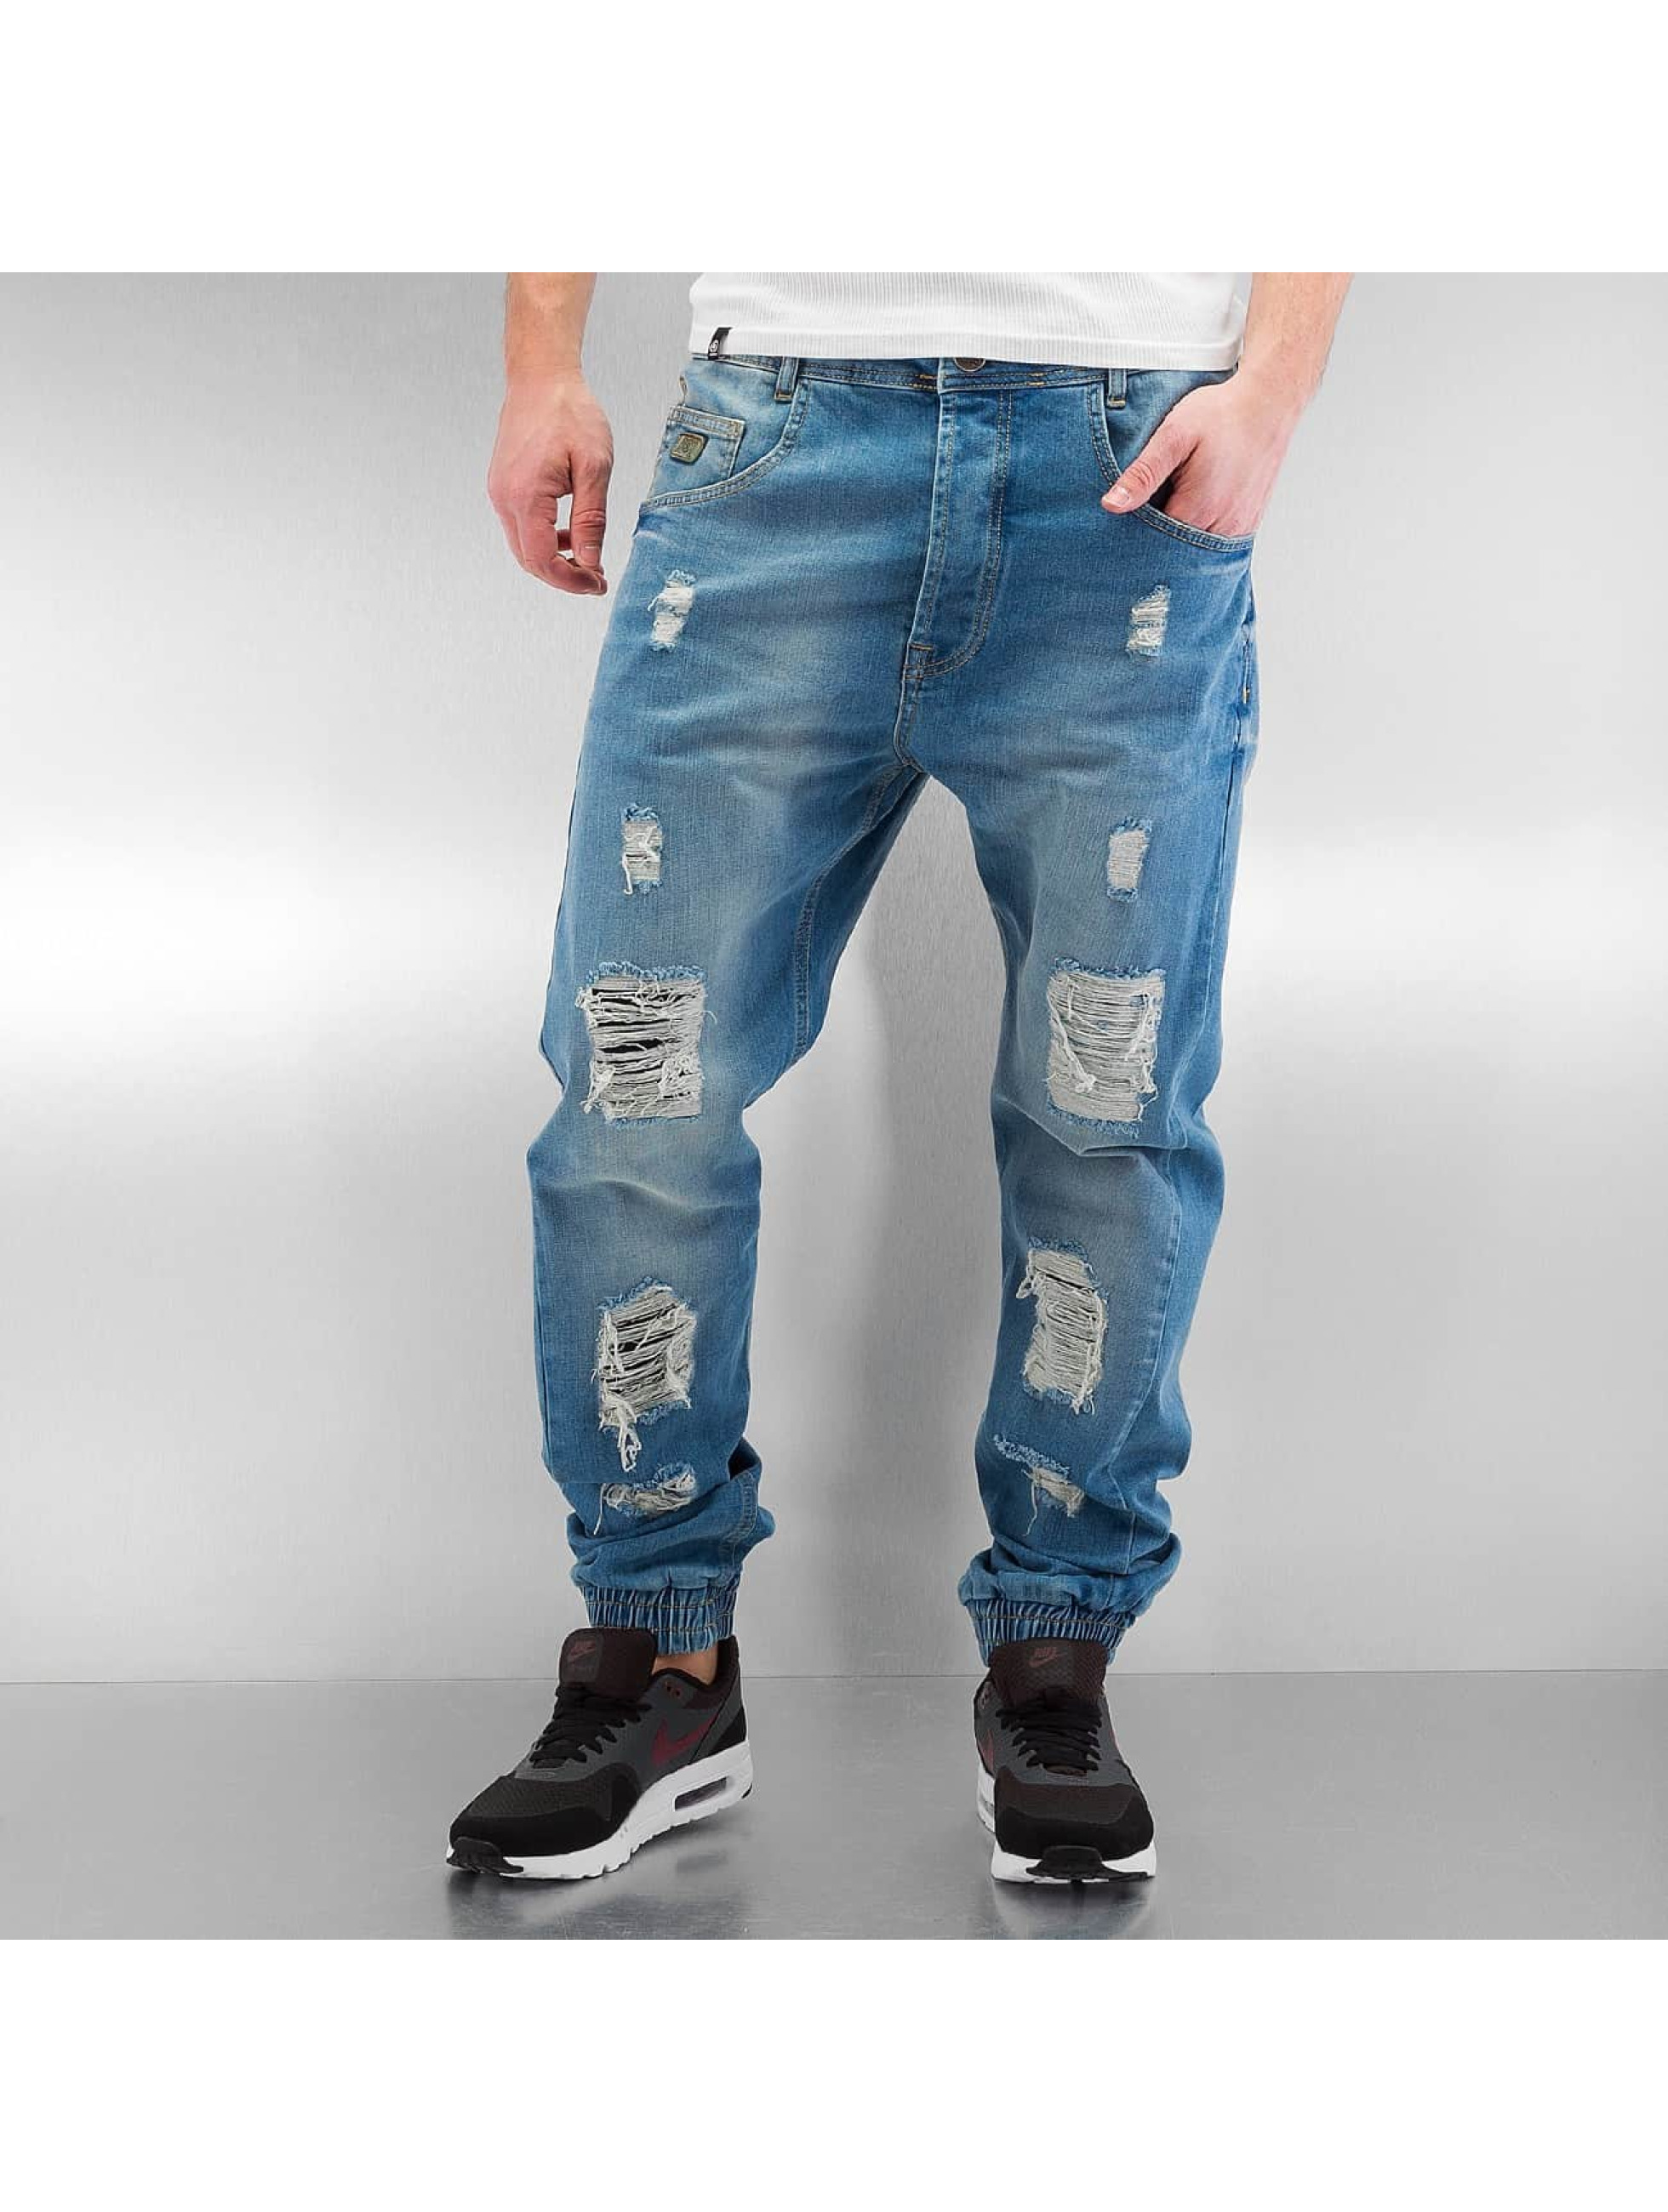 Antifit джинсы мужские